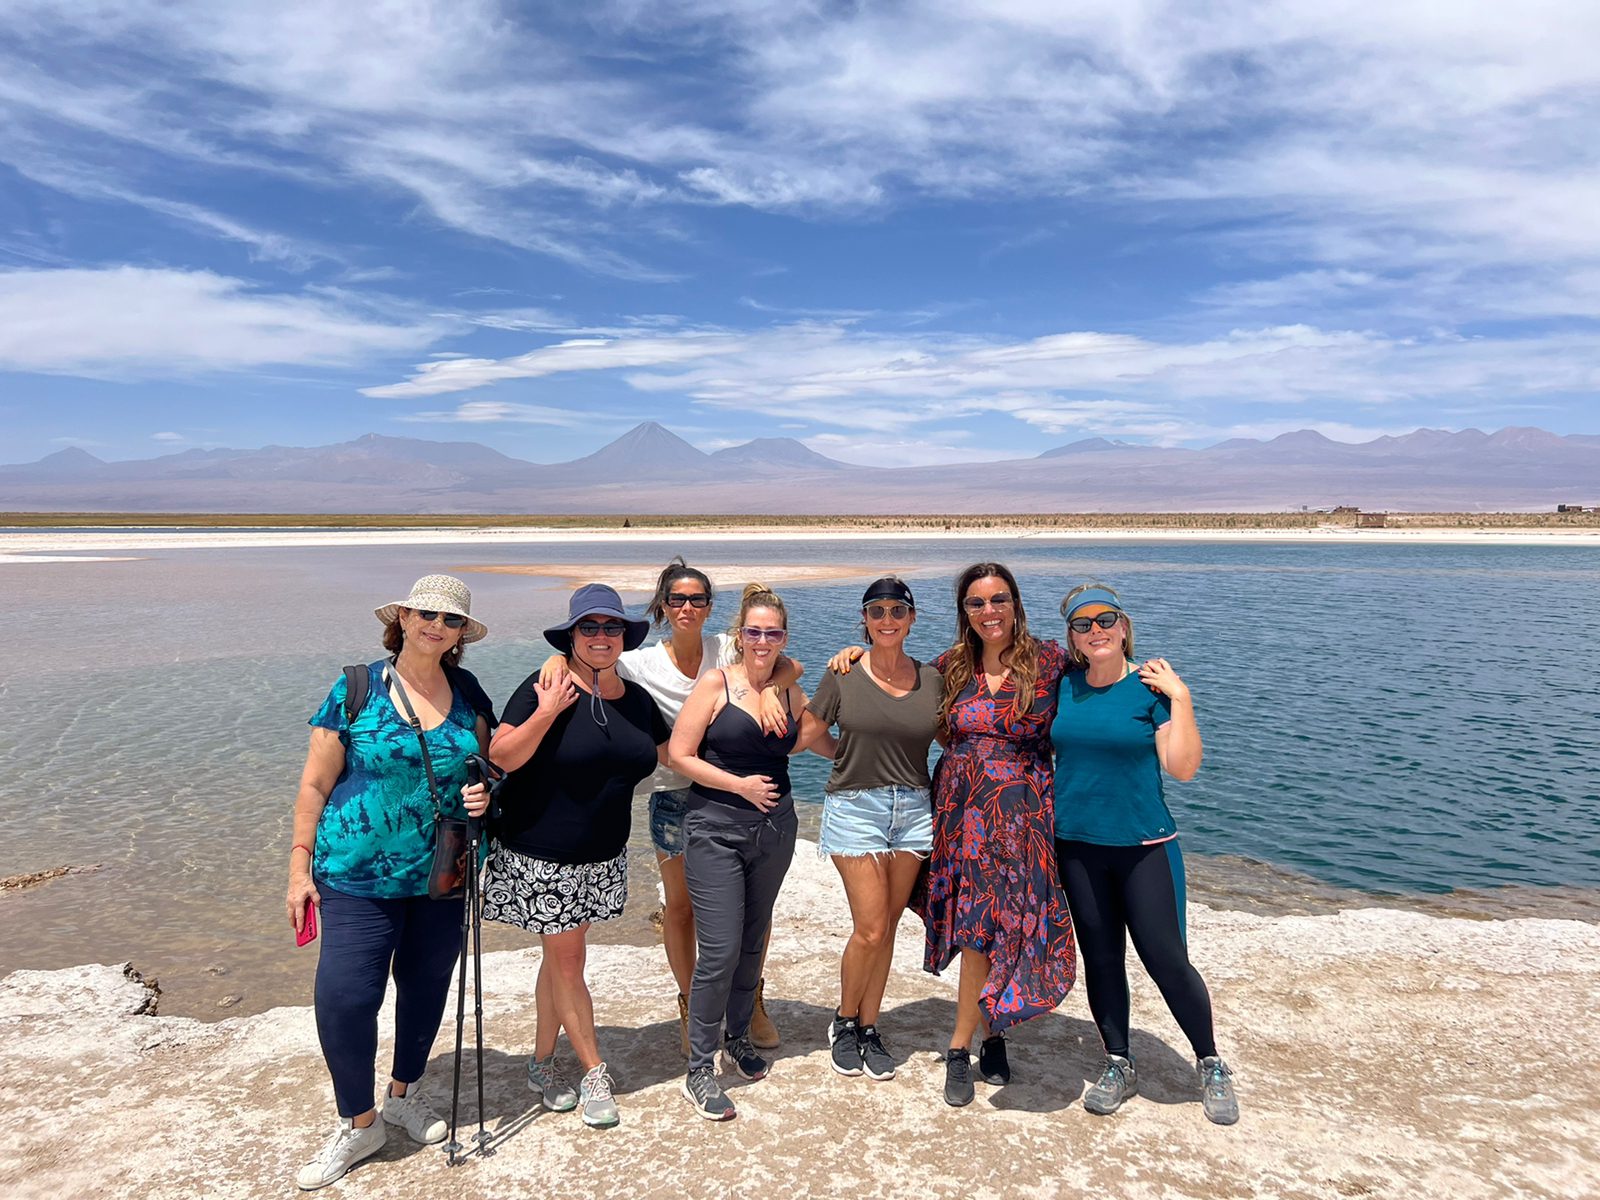 Minha experiência no Deserto do Atacama: o que fiz e o que me surpreendeu